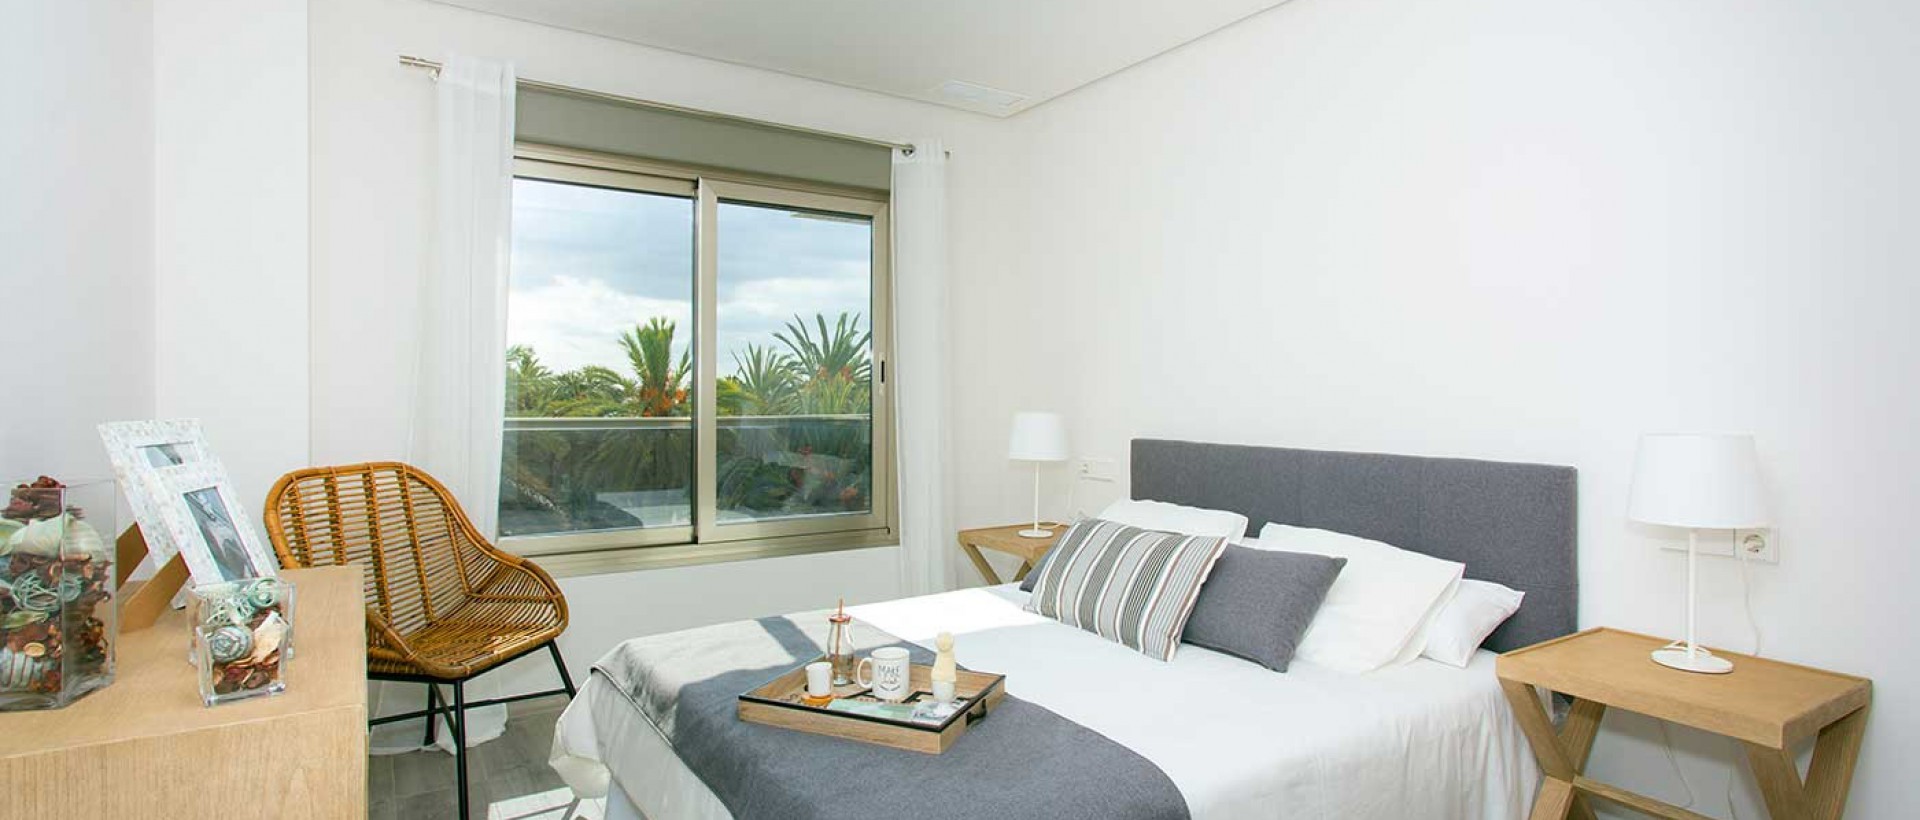 Appartements de luxe de nouvelle construction à vendre dans le centre d'Elche, Costa Blanca, Espagne - Urmosa